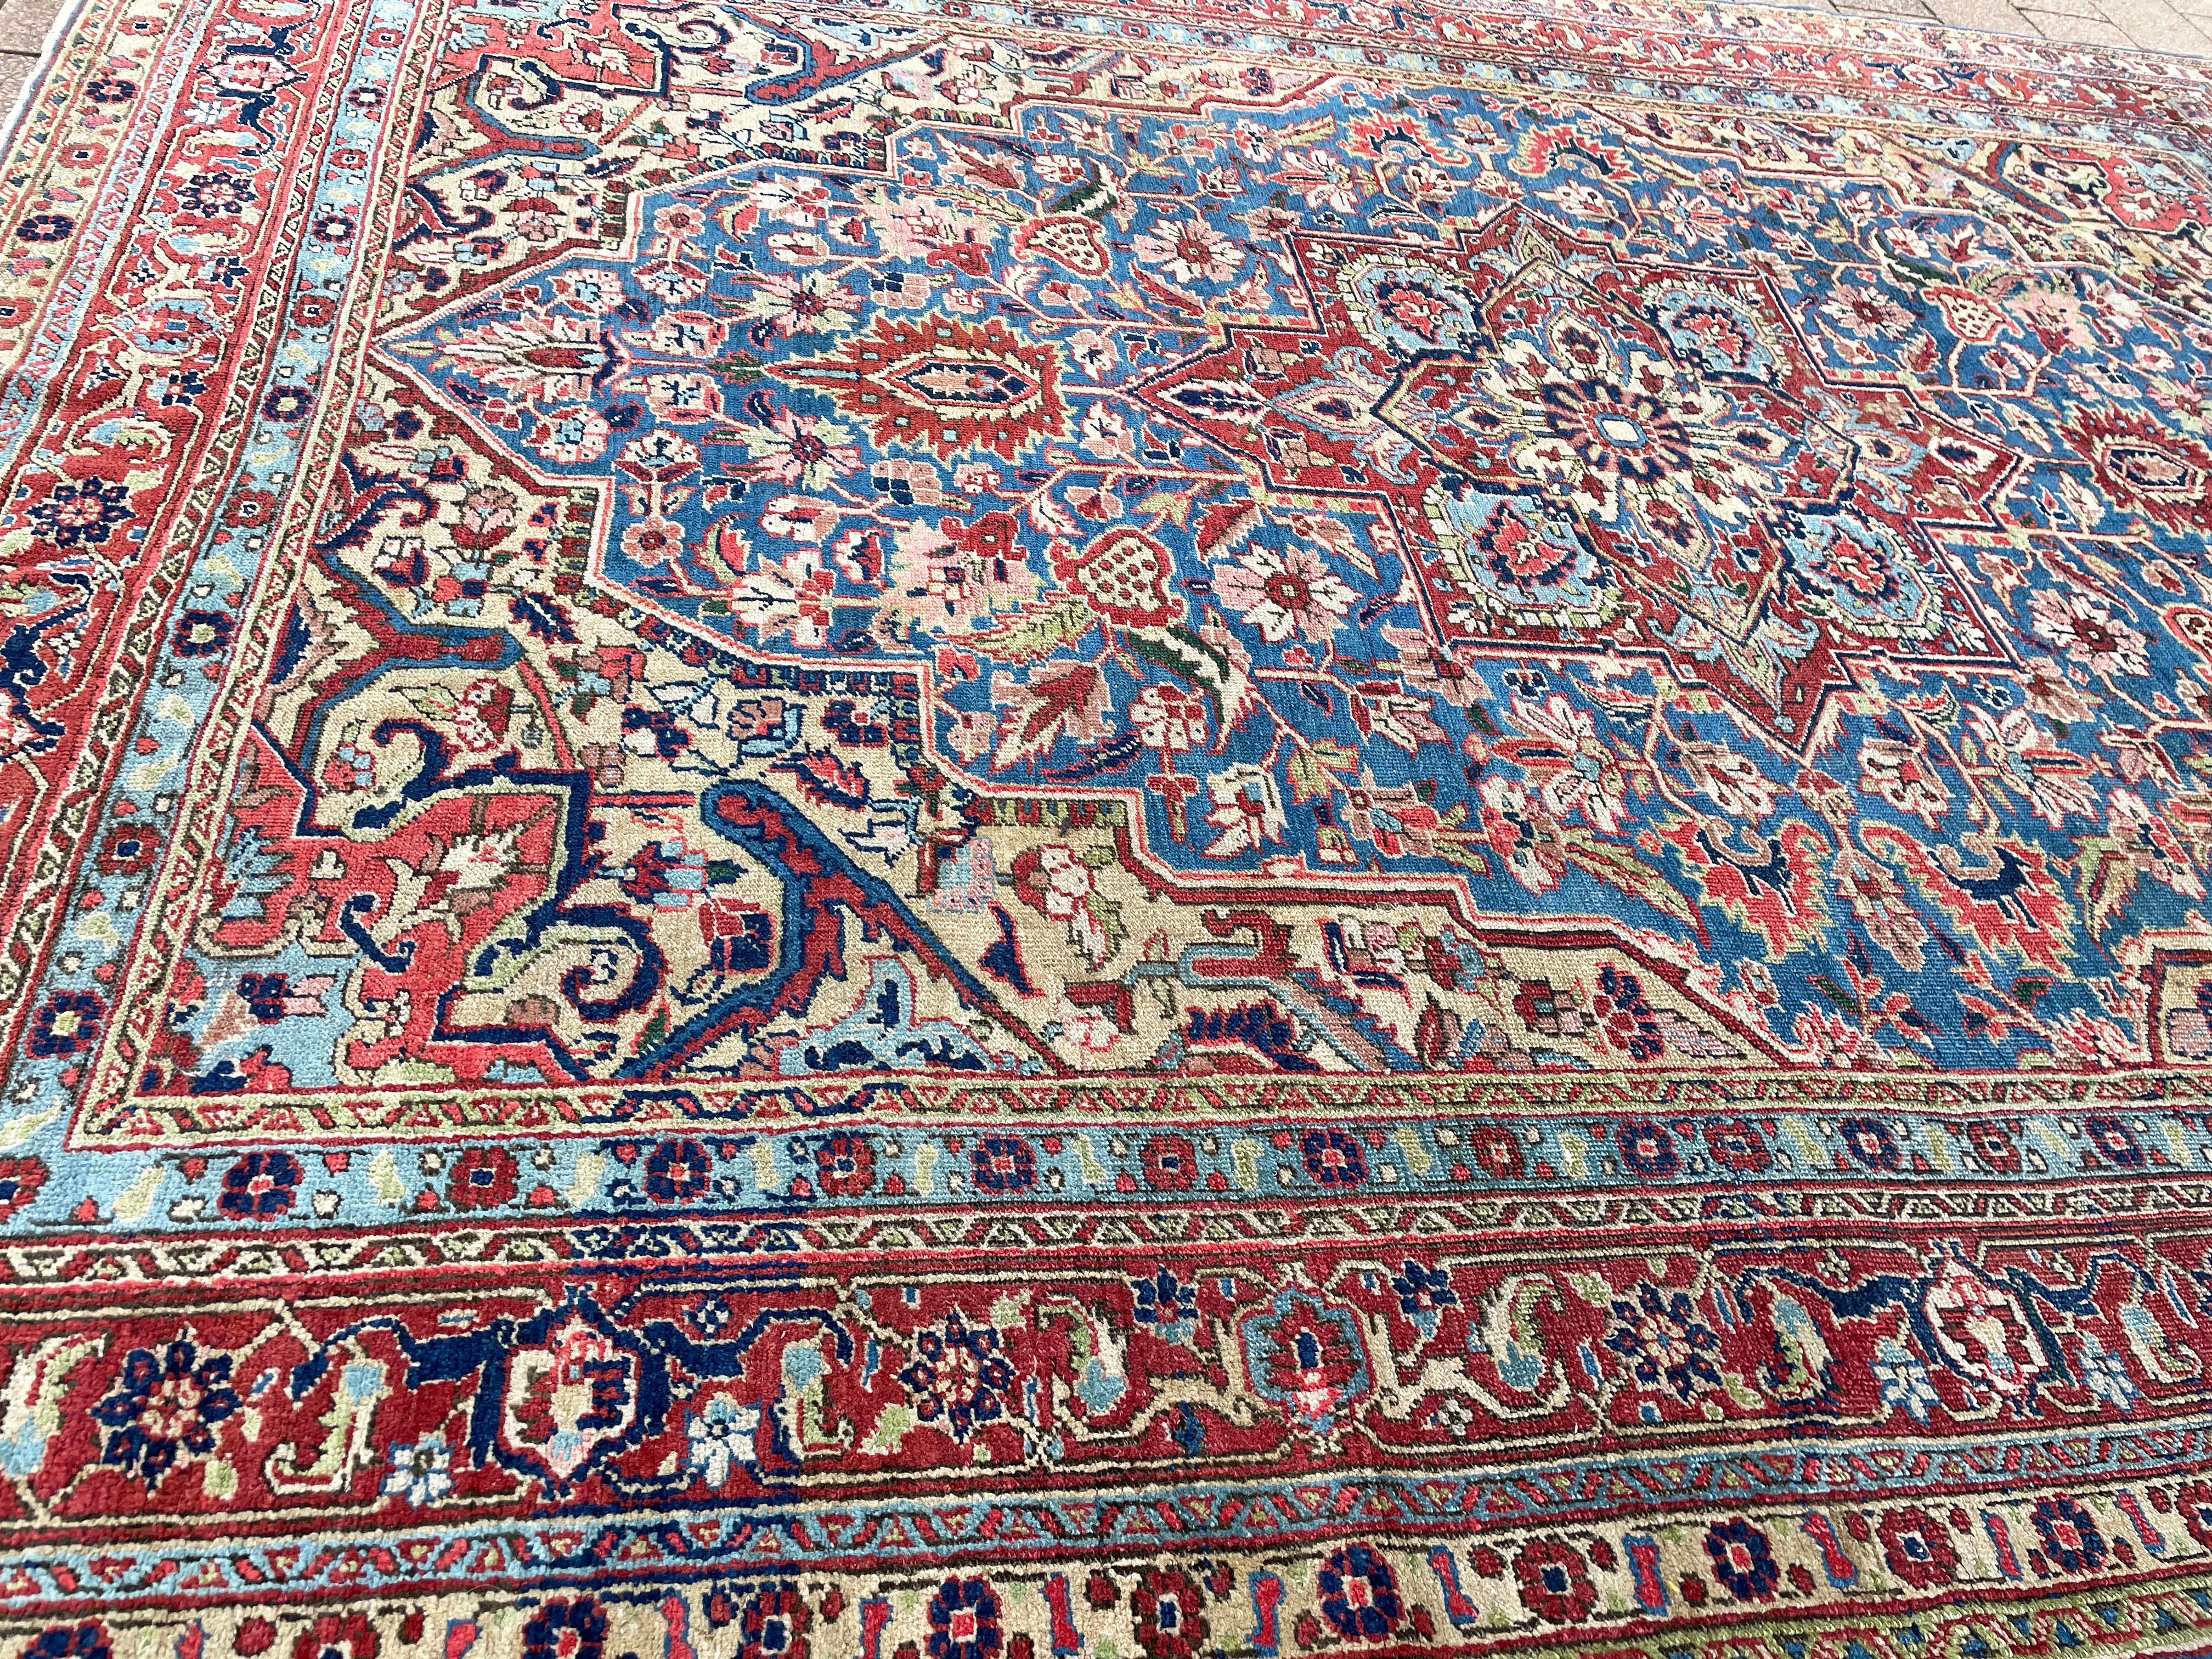  Ancienne Heriz/Serapi persane,  originaire de la province iranienne d'Azerbaïdjan oriental et de la région de Heriz,  Les musées de l'Union européenne abritent une riche tapisserie de l'histoire et de l'artisanat. Le village de Vener, niché au sud